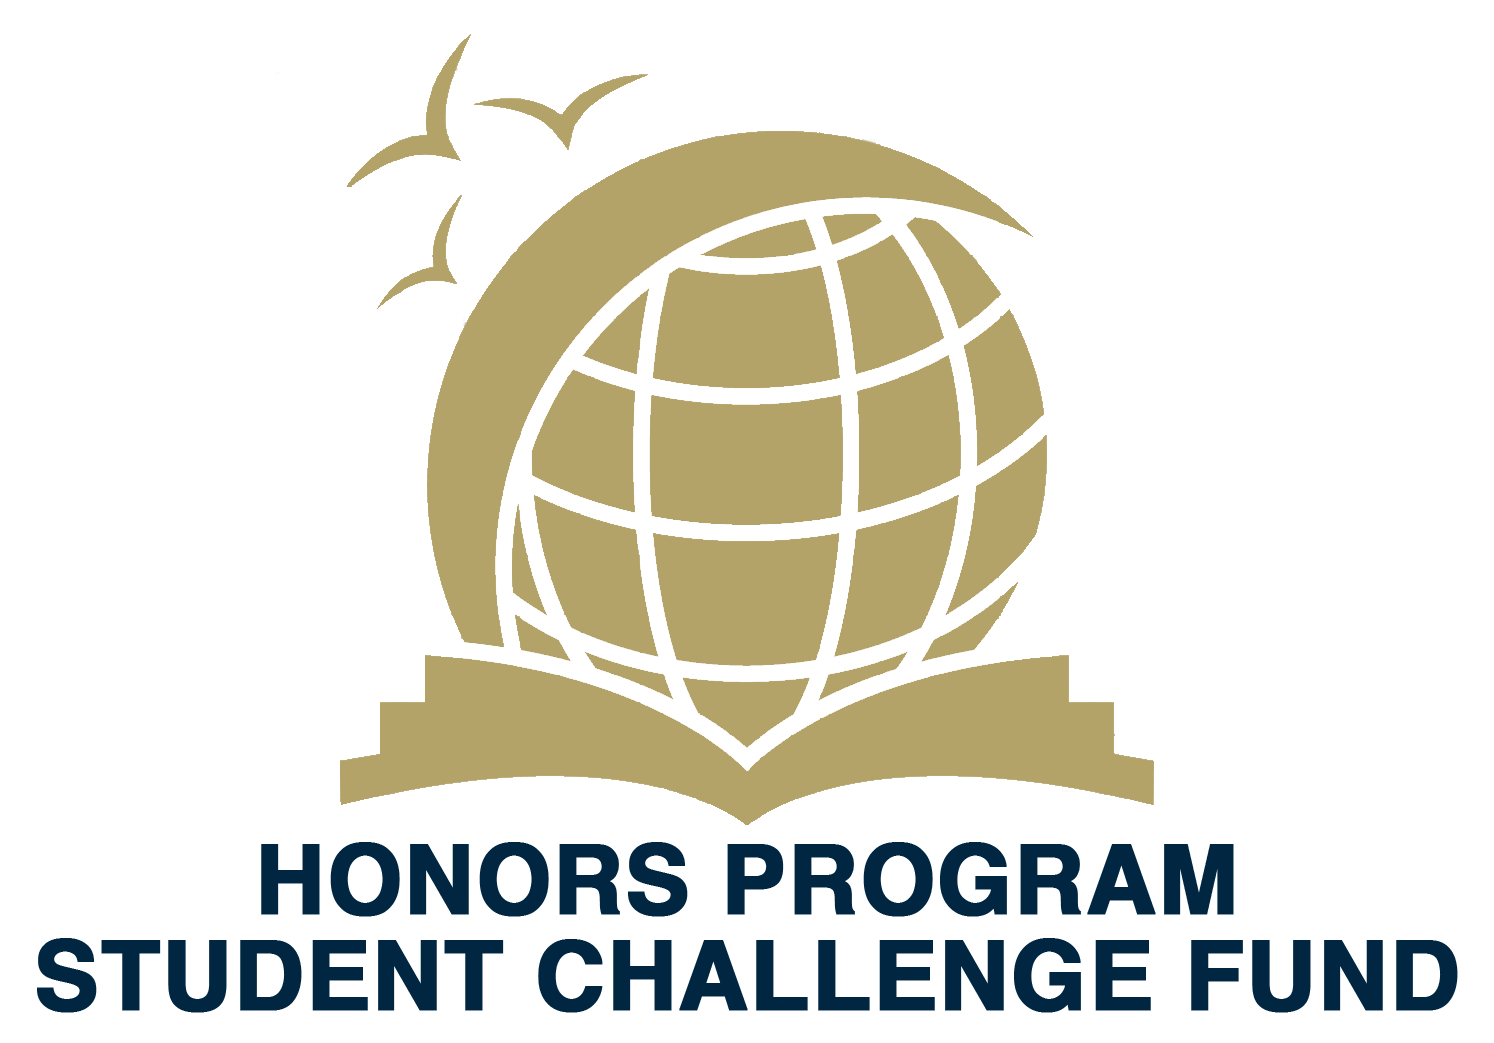 Student Challenge Fund logo